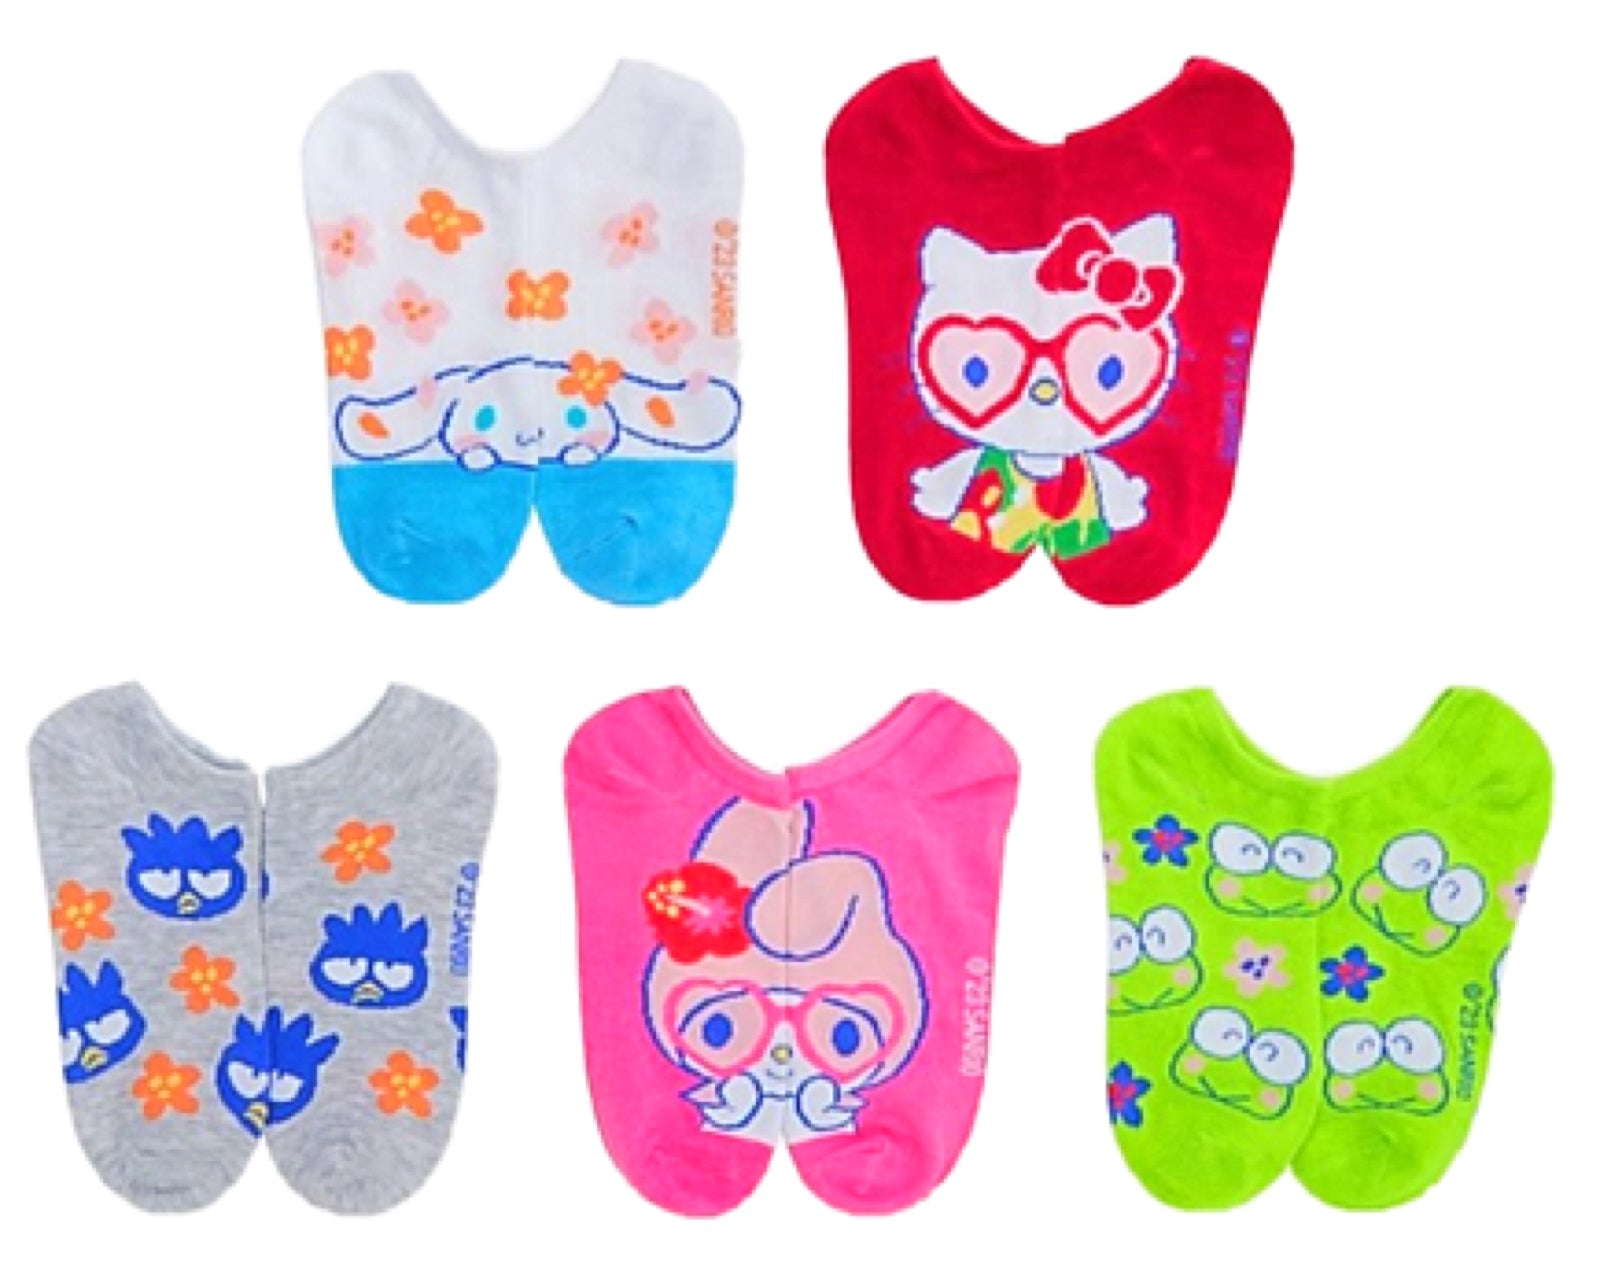 Sanrio Hello Kitty Socks Women Summer Autumn Boat Socks Non-slip